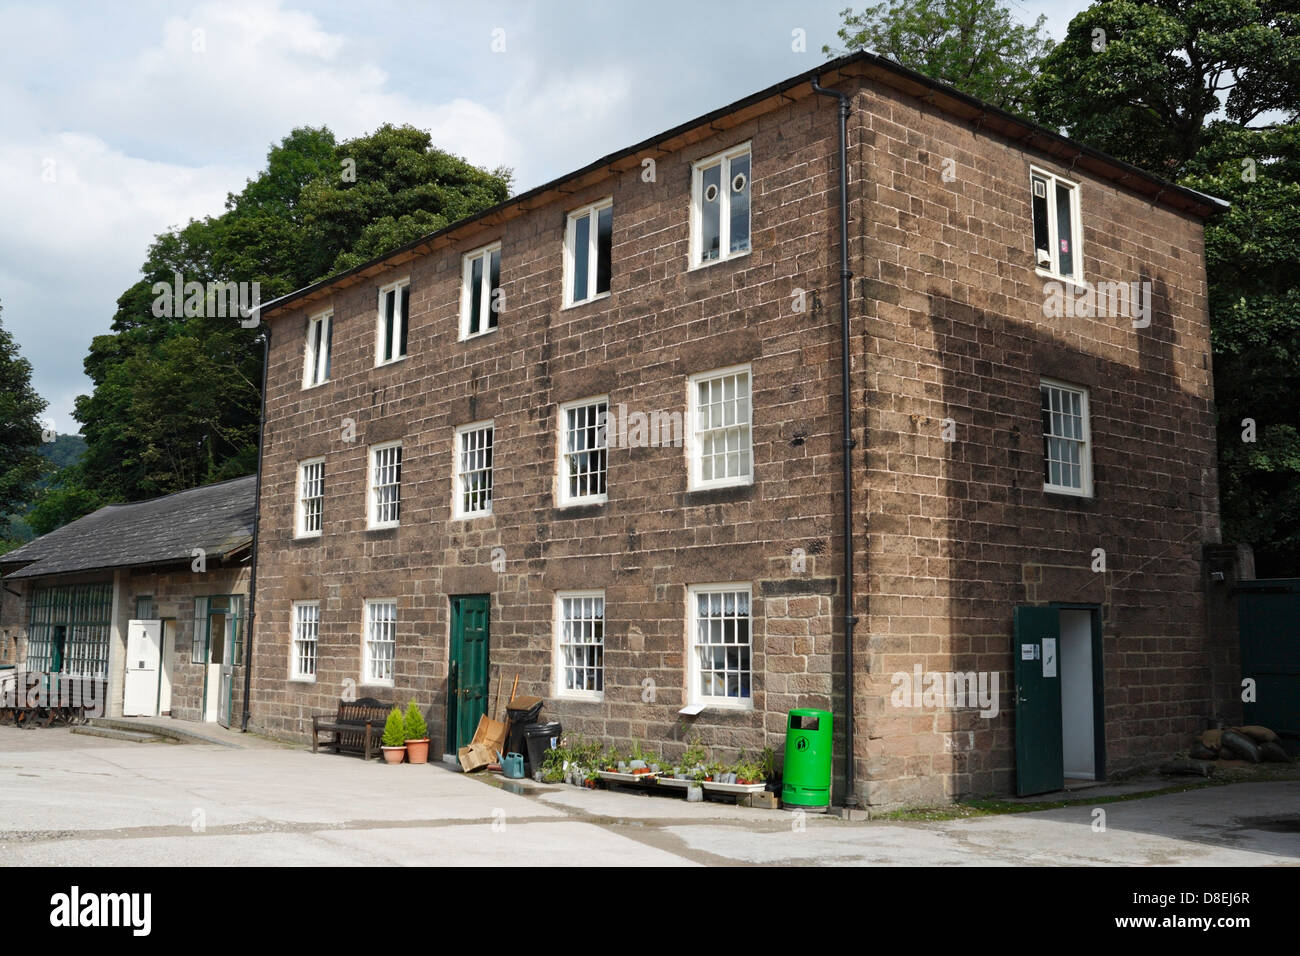 Bâtiments Old Mill à Cromford Mill dans le Derbyshire Angleterre Royaume-Uni, un site historique du patrimoine mondial classé grade I bâtiment Banque D'Images